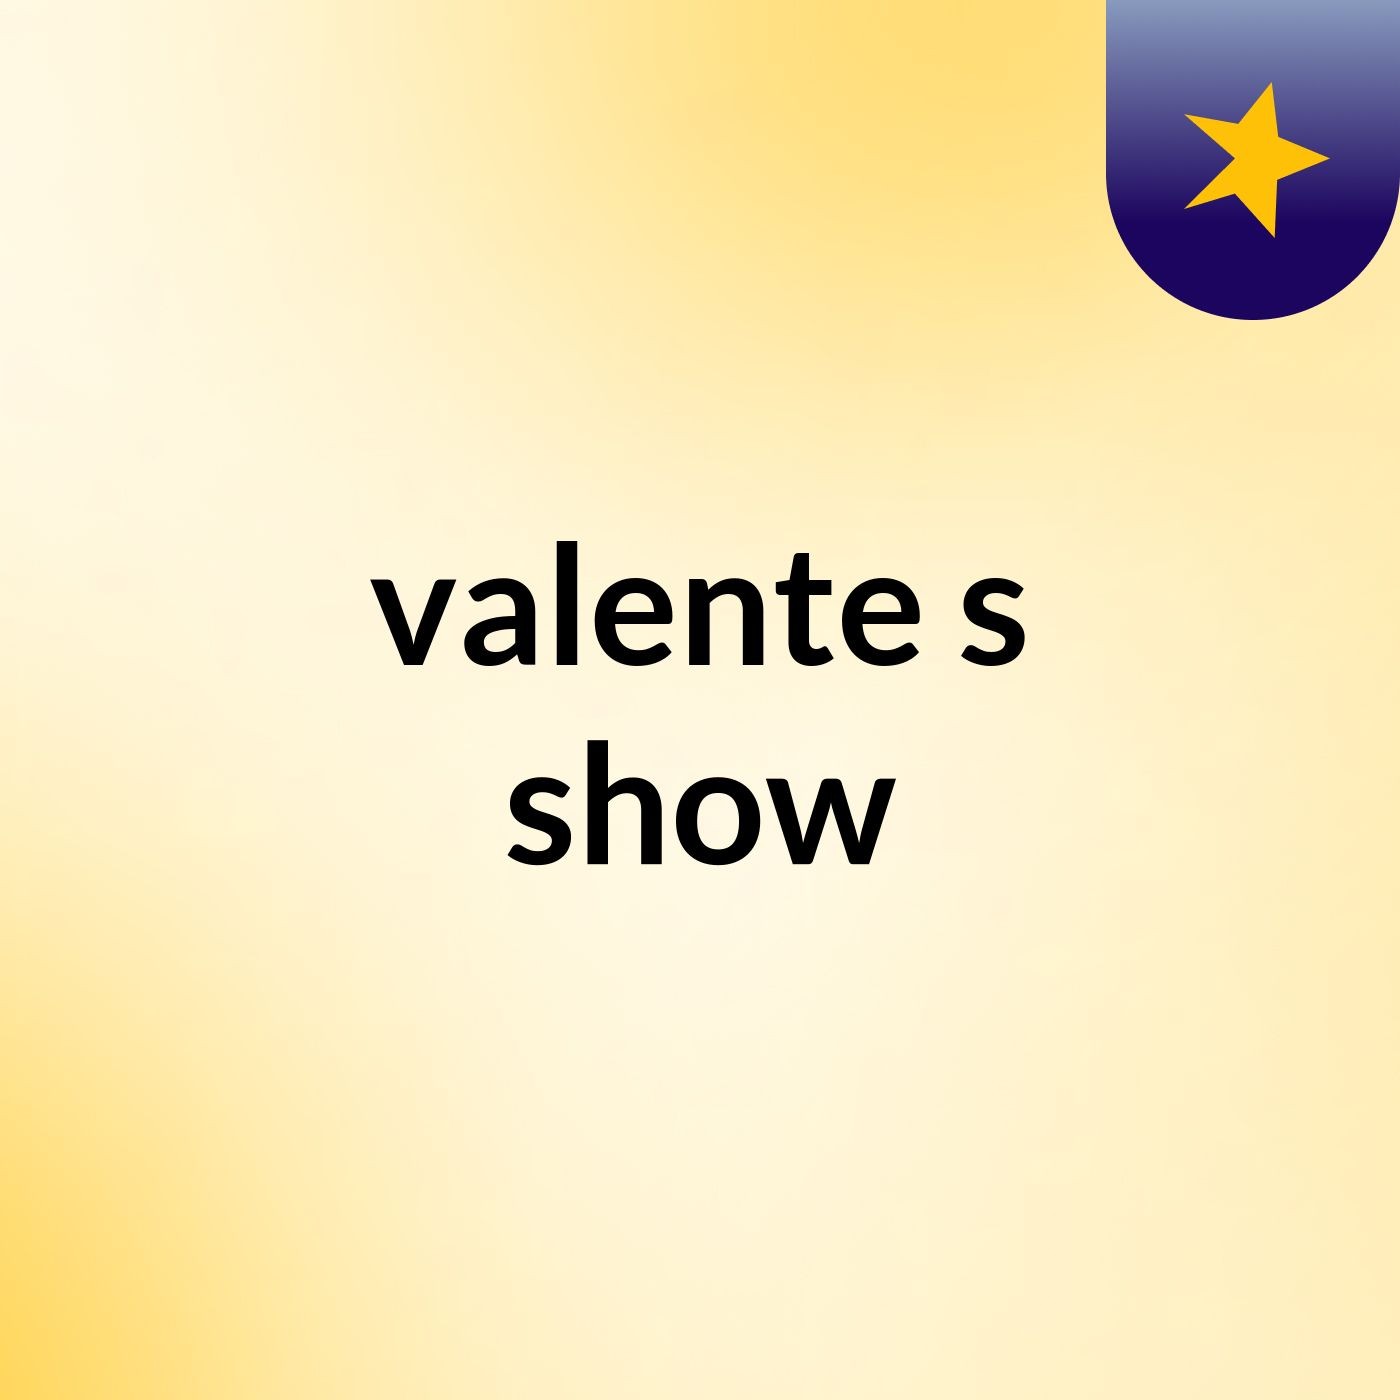 valente's show